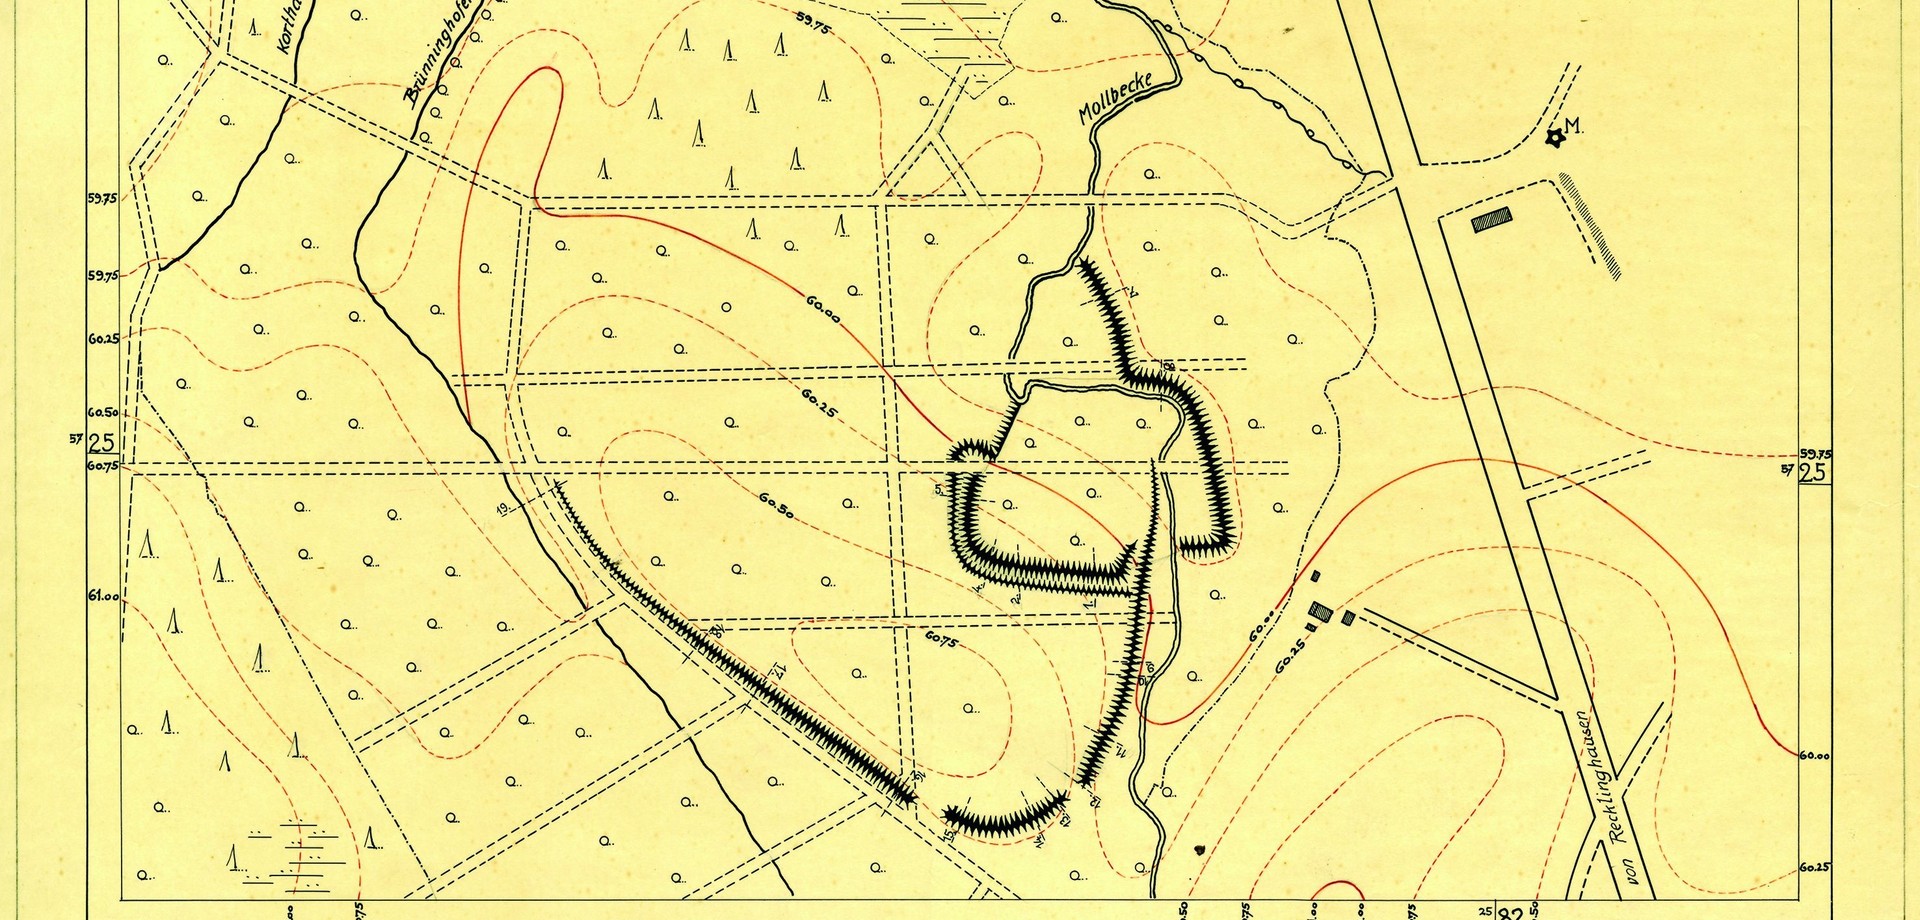 Plan der Burg bei Marl-Sinsen von 1925 (Planarchiv der Altertumskommission für Westfalen).